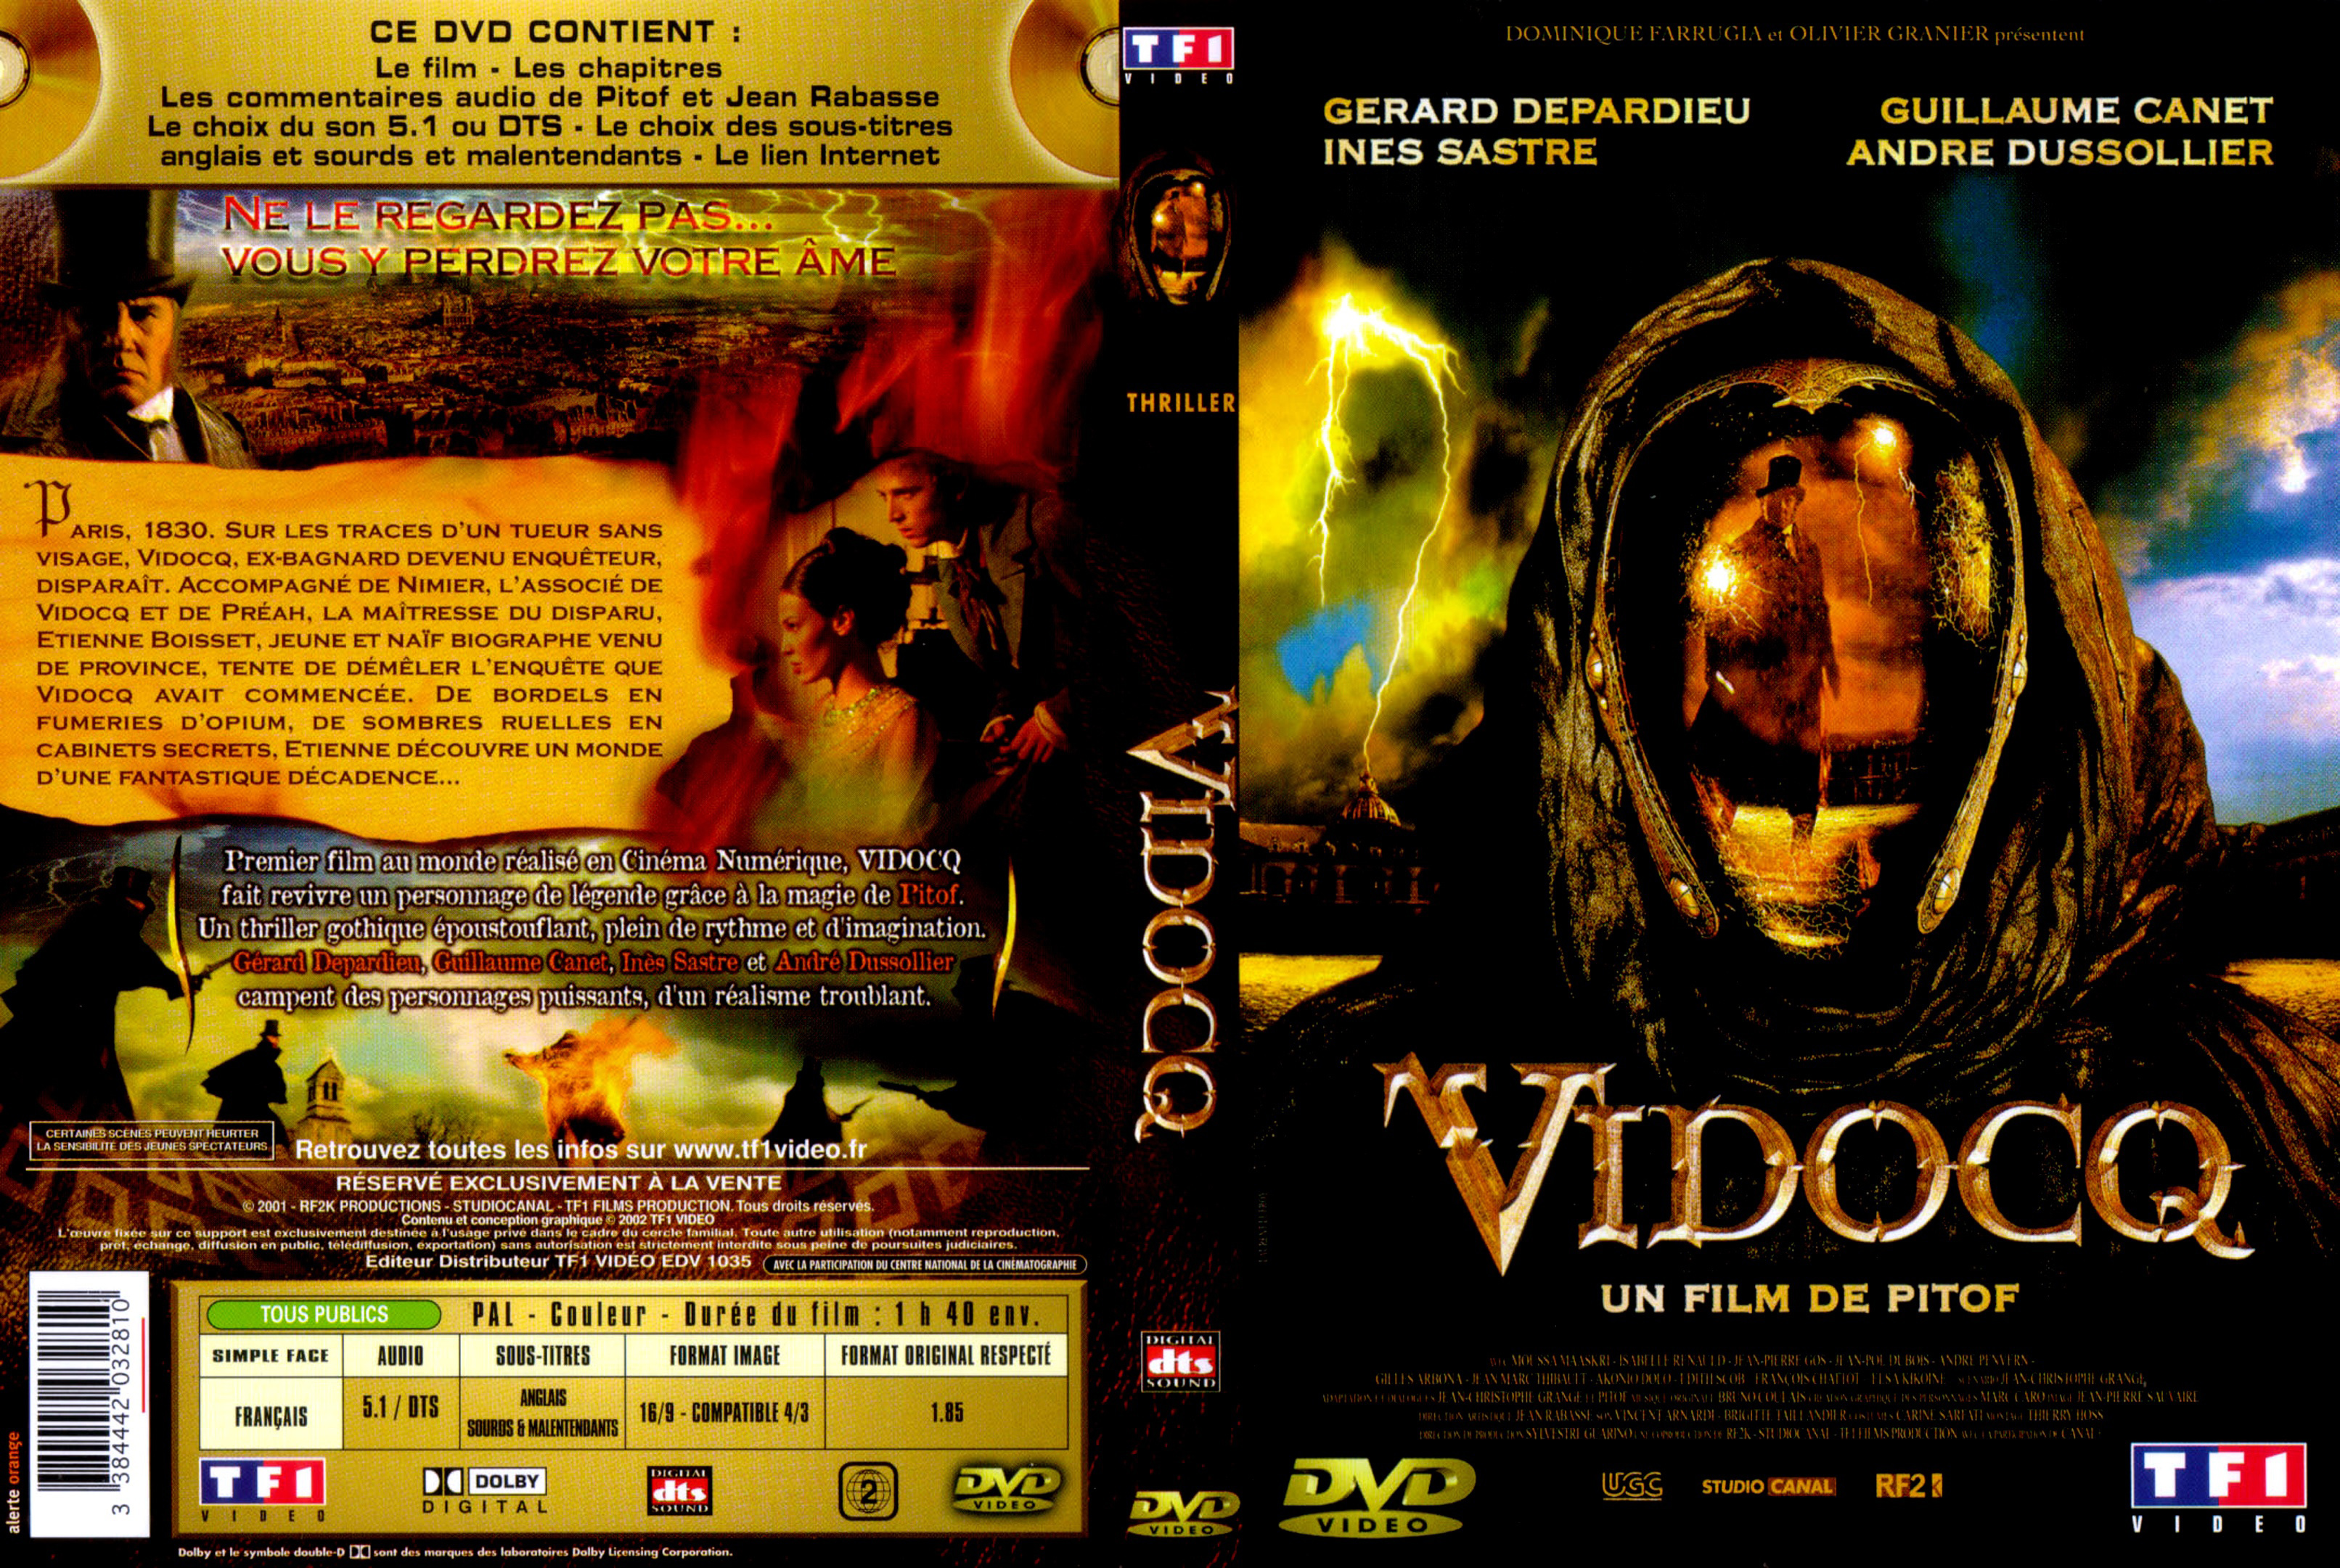 Jaquette DVD Vidocq v2